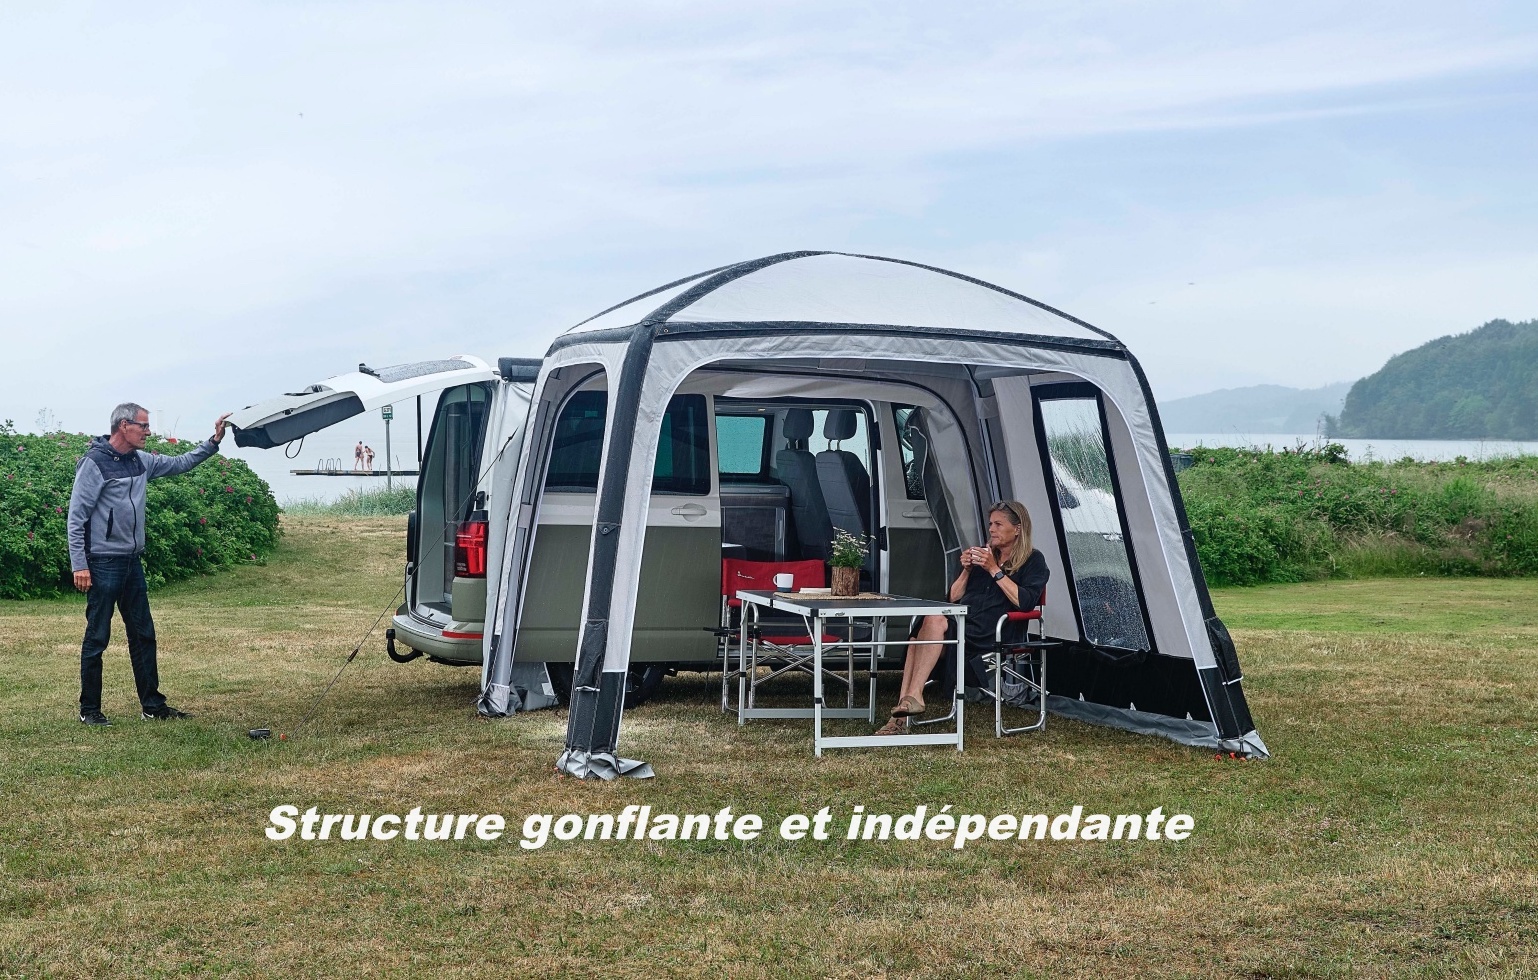 Camping-car par Marque vrai forum :: Auvent - Auvent gonflable